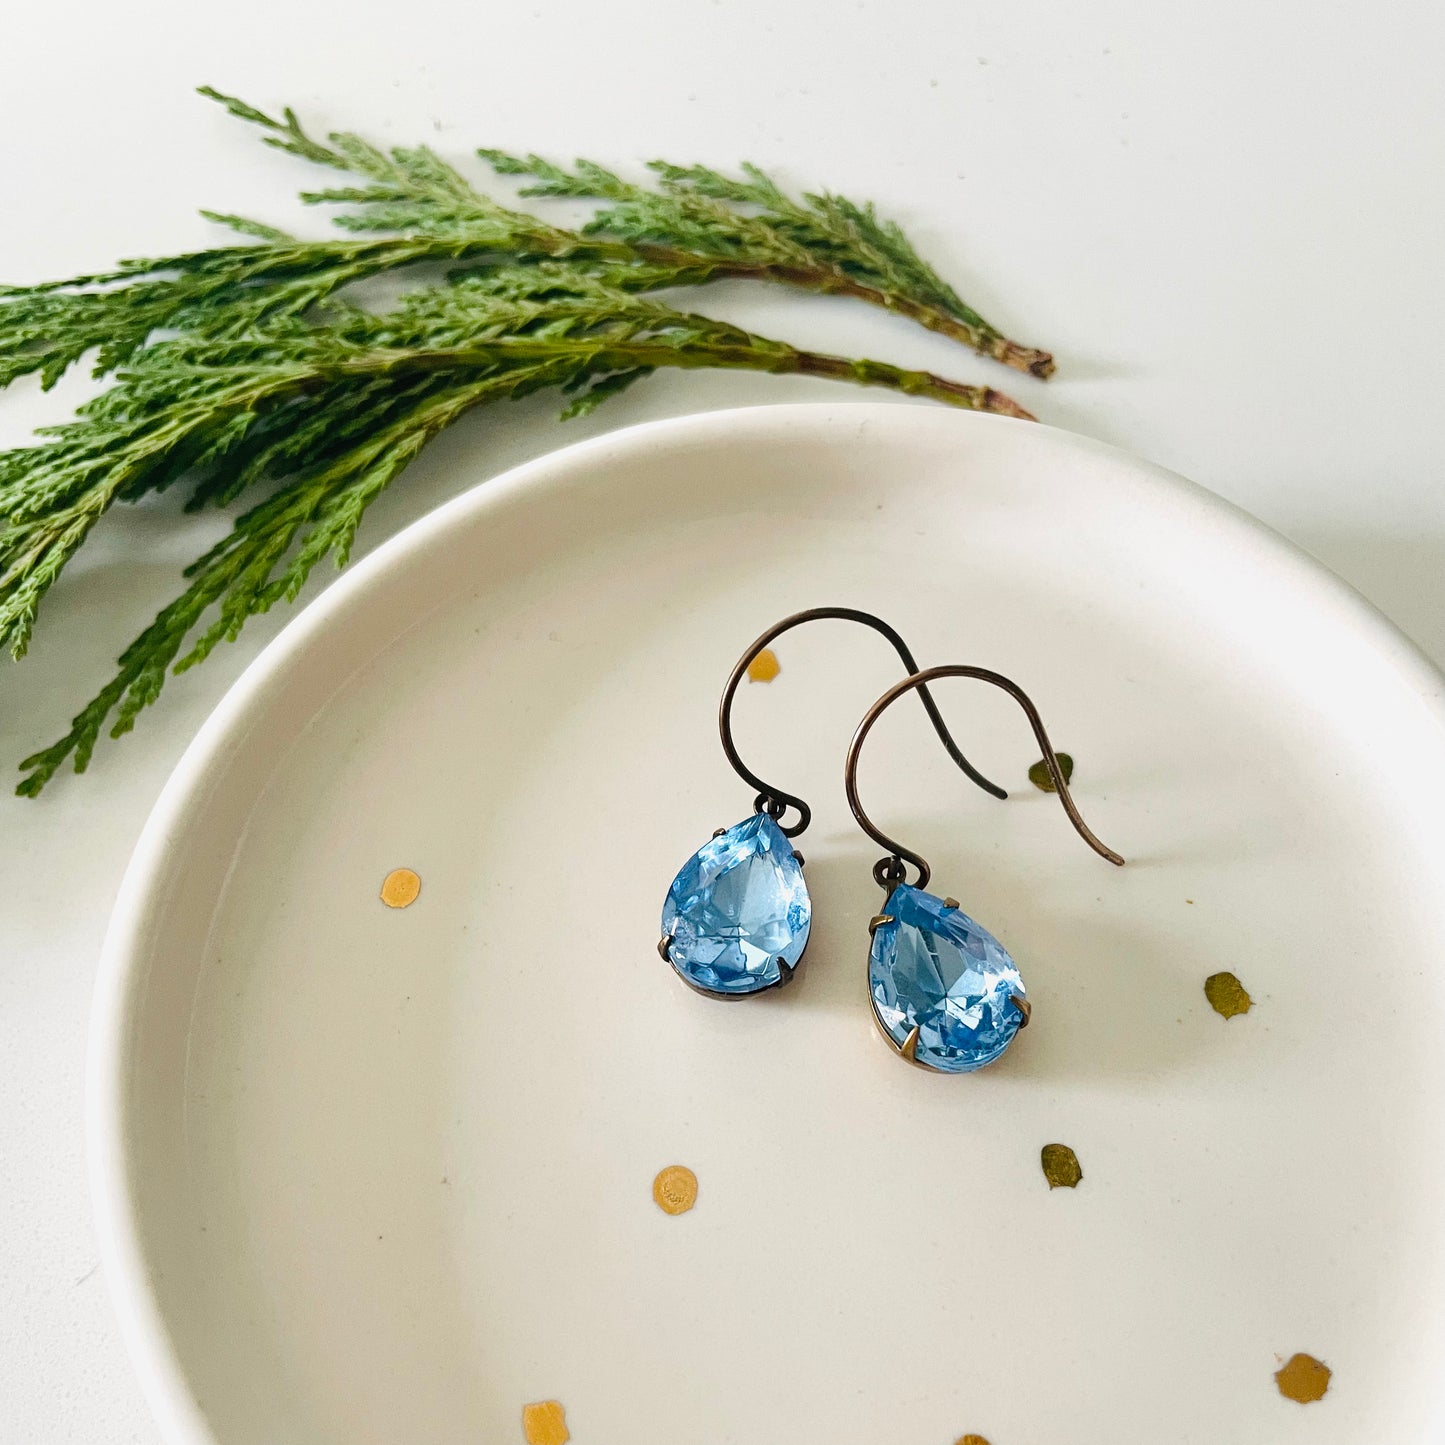 Light Blue Teardrop Vintage Rhinestone Earrings